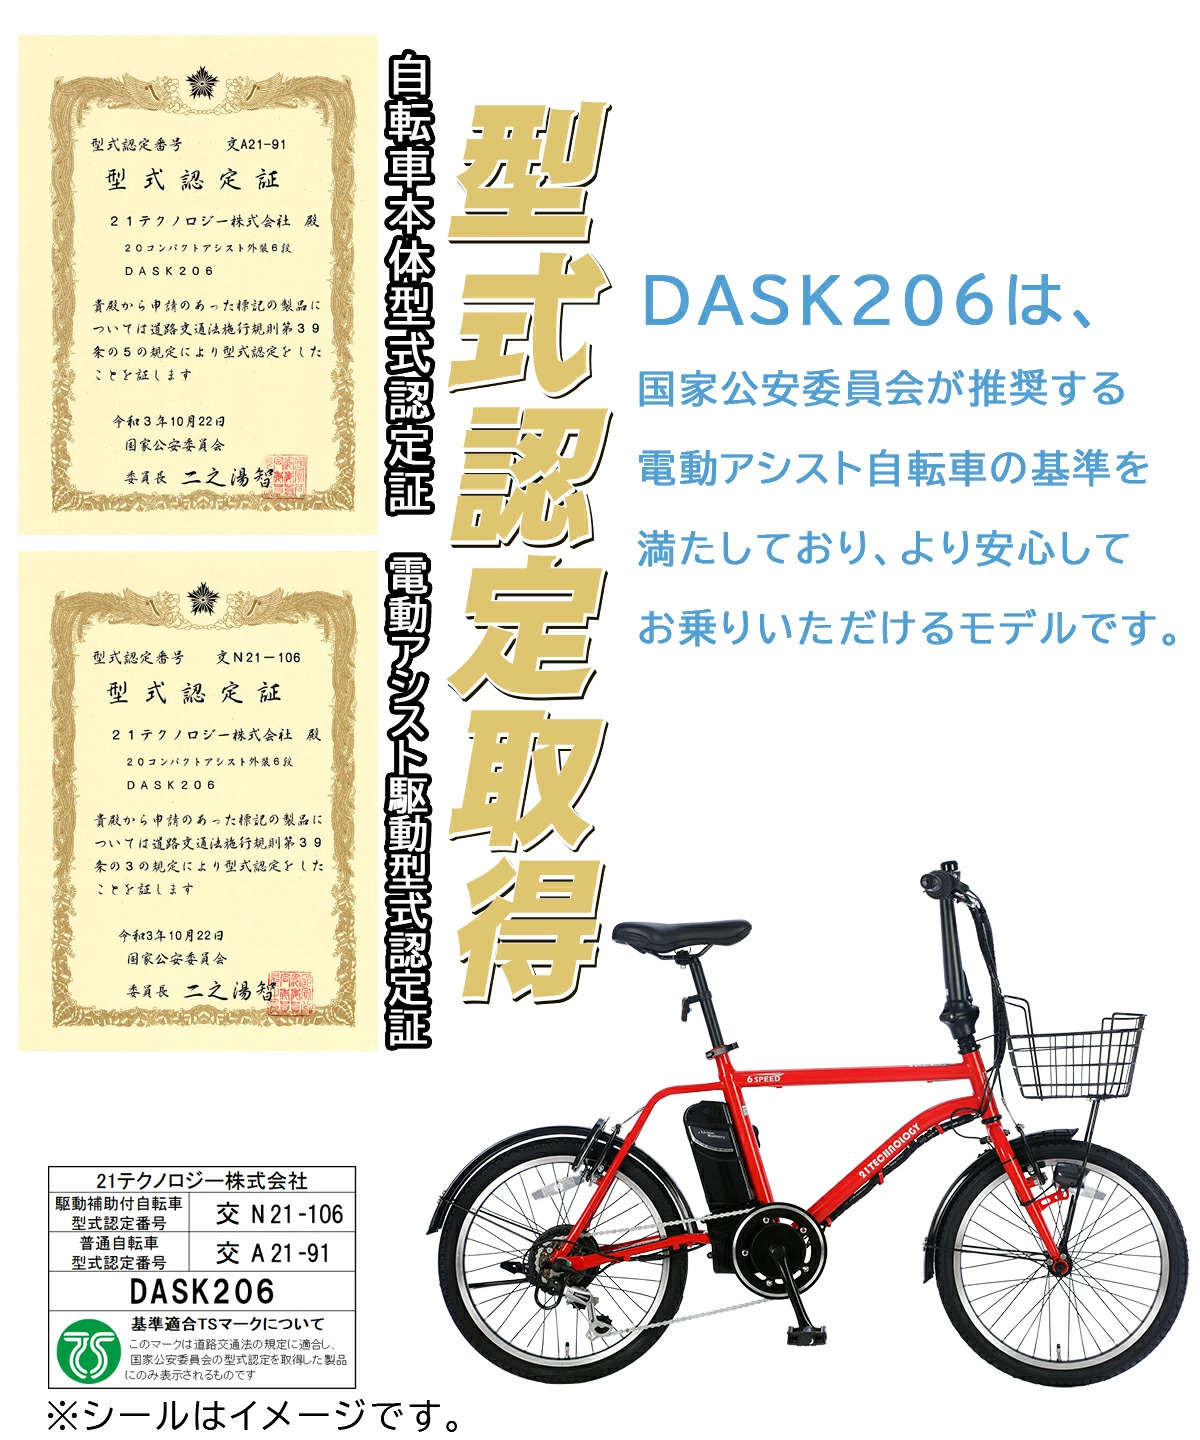 20インチ電動アシスト自転車 DASK206 型式認定取得